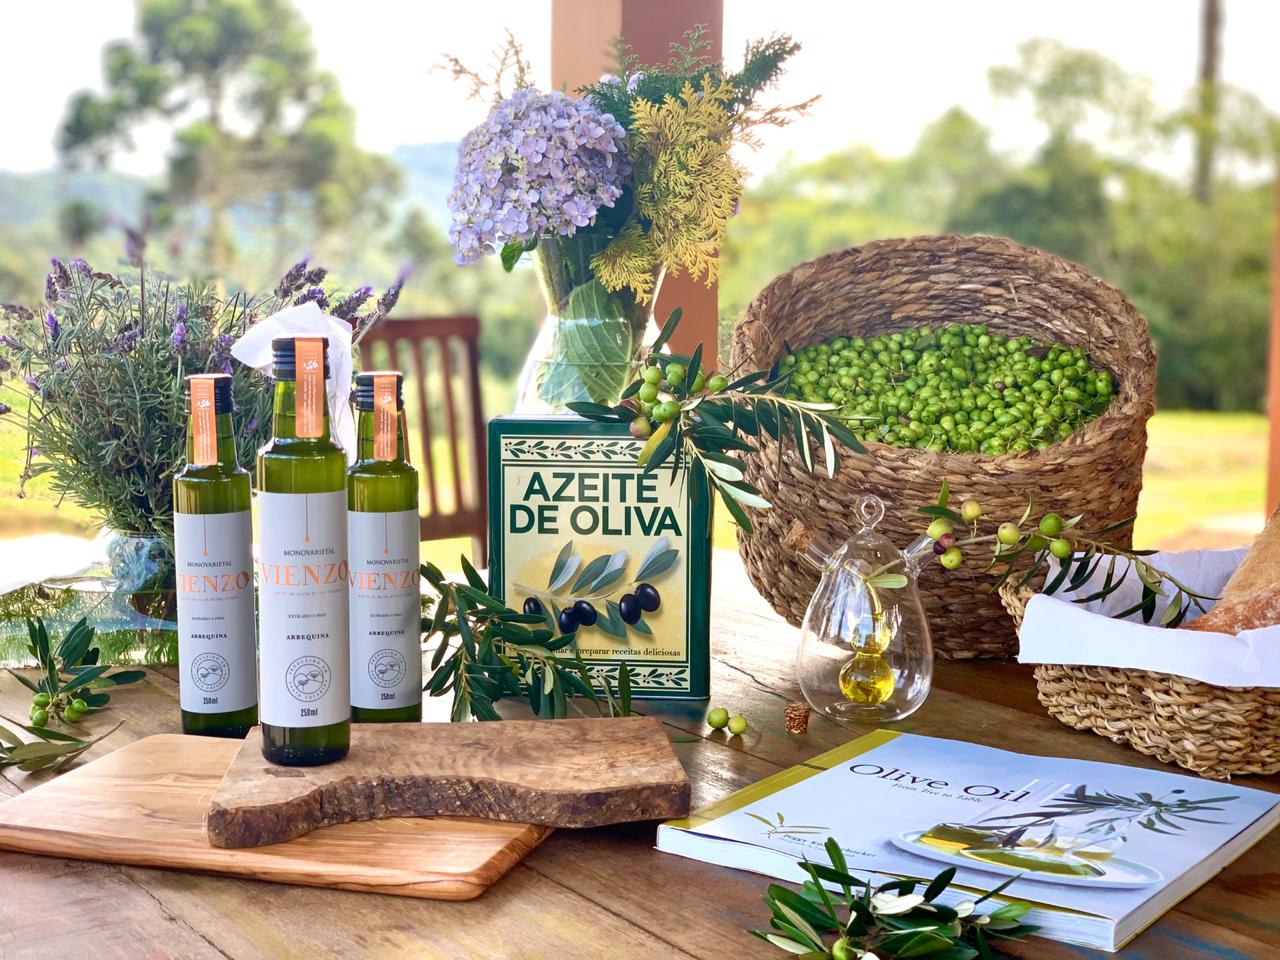 Un nutricionista revela todos los beneficios del aceite de oliva